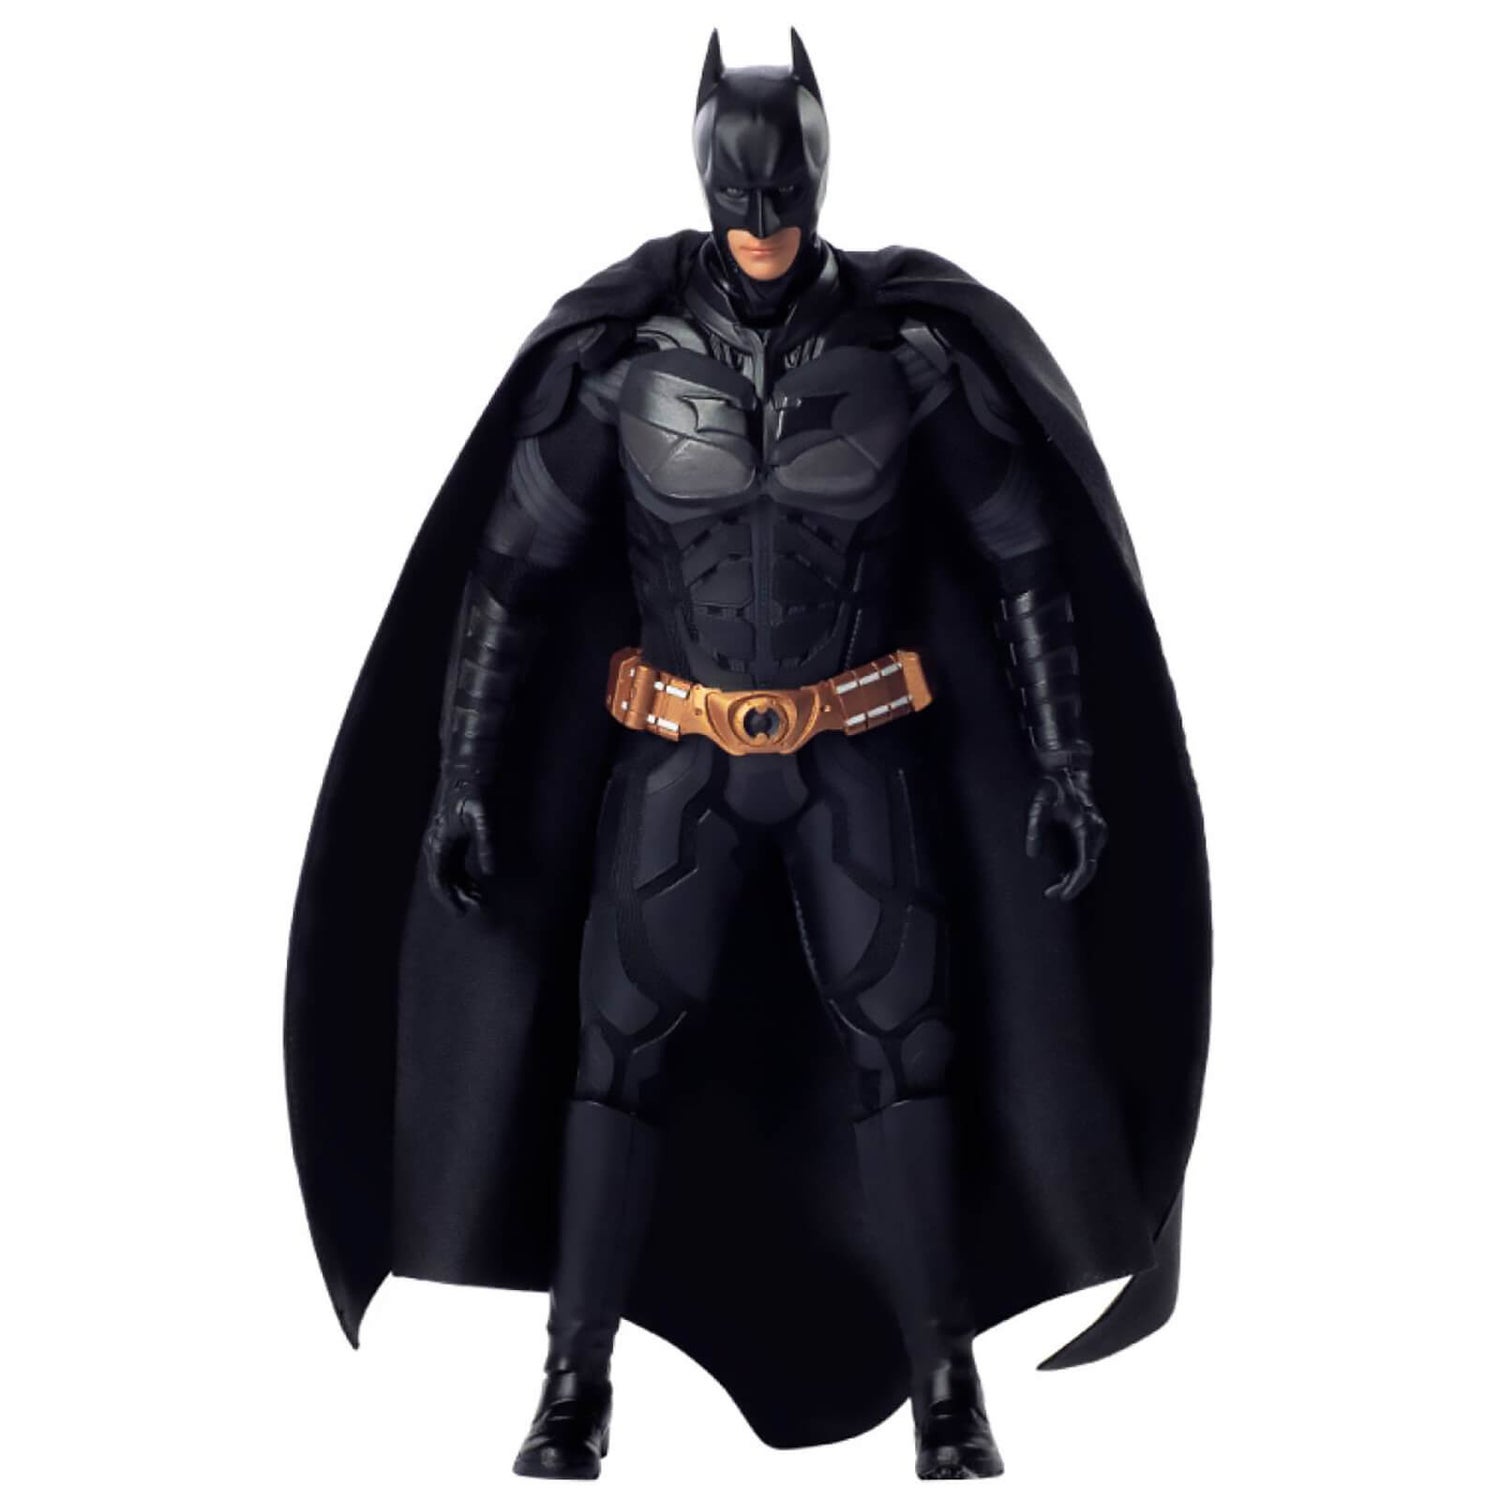 Preview: Soap Studio The Dark Knight 1/12 Scale Batman Figure - The Batman  Universe